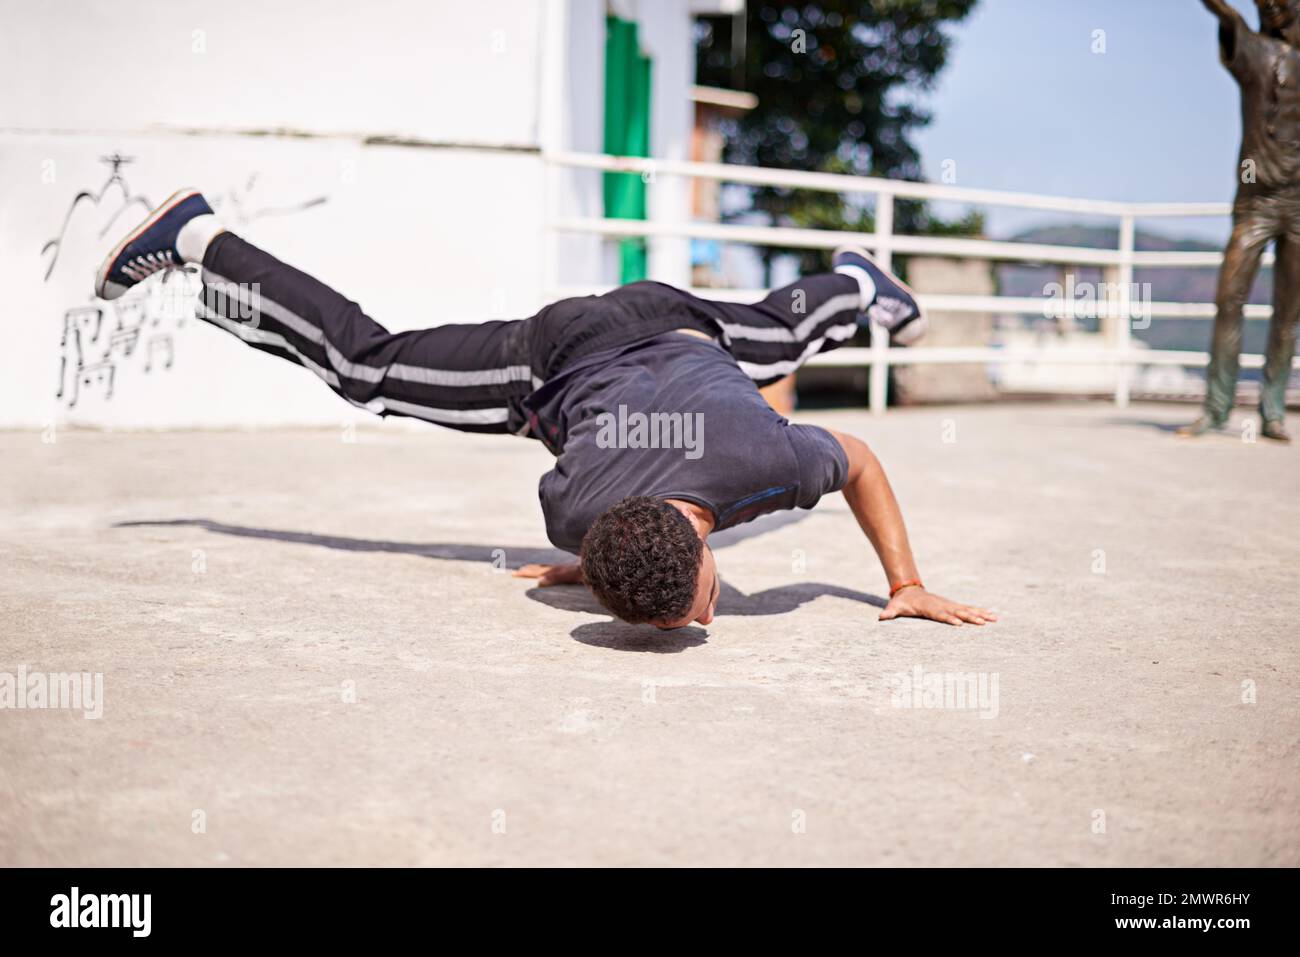 Ballare per le strade. Inquadratura ad angolo basso di un giovane breakdancer maschile in un ambiente urbano. Foto Stock